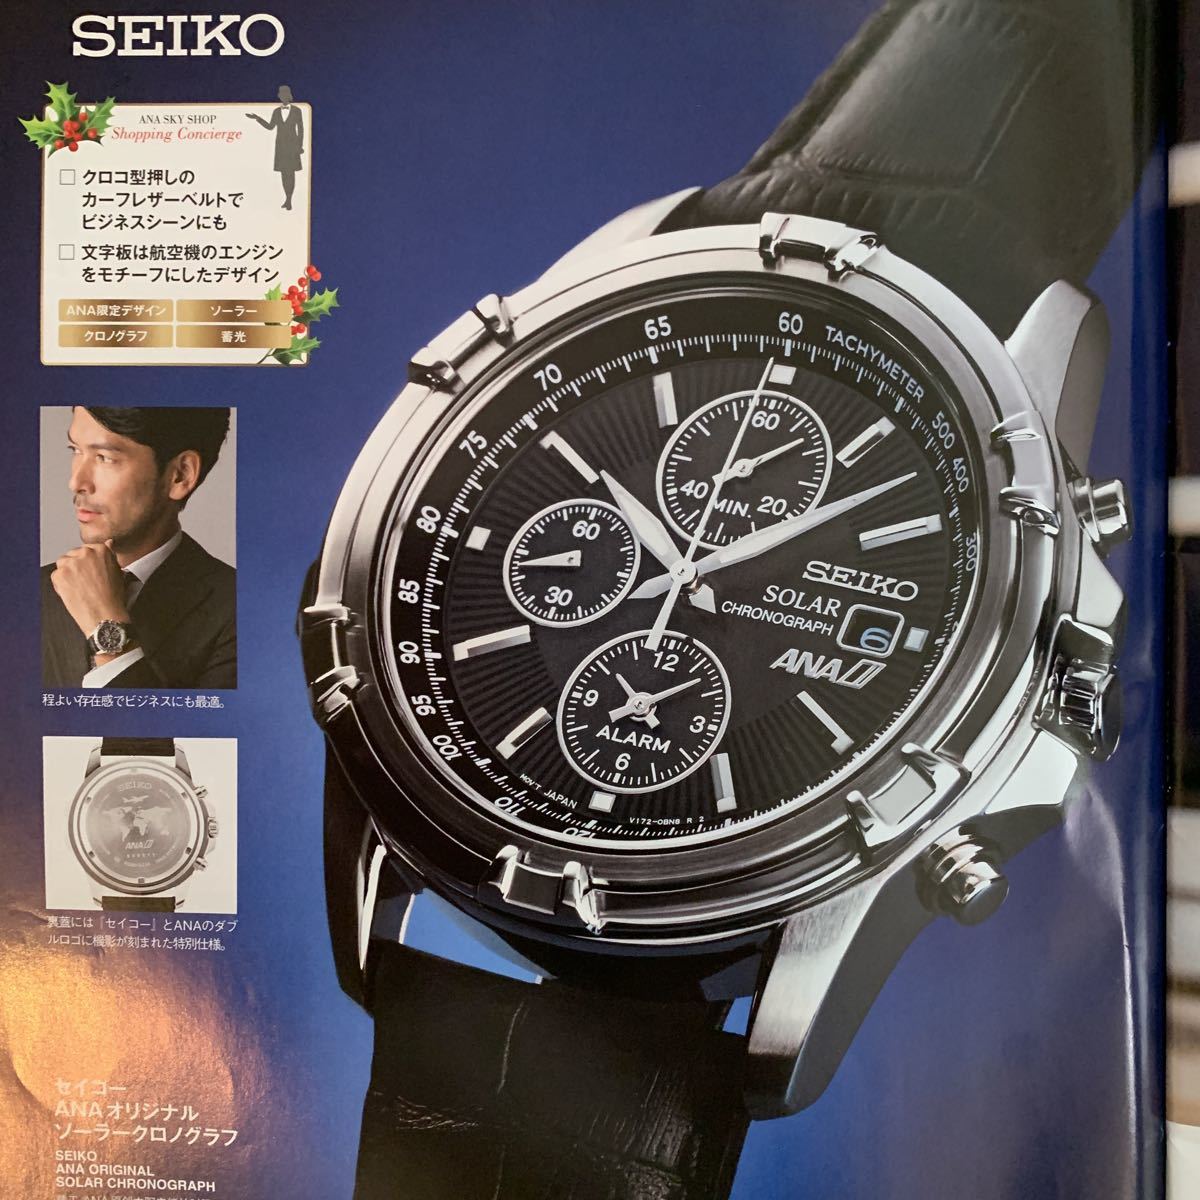 新品未使用 SEIKO(セイコー)×ANA(全日空) 限定コラボ ソーラー腕時計 クロノグラフ ブラック レザー(本革) 送料無料